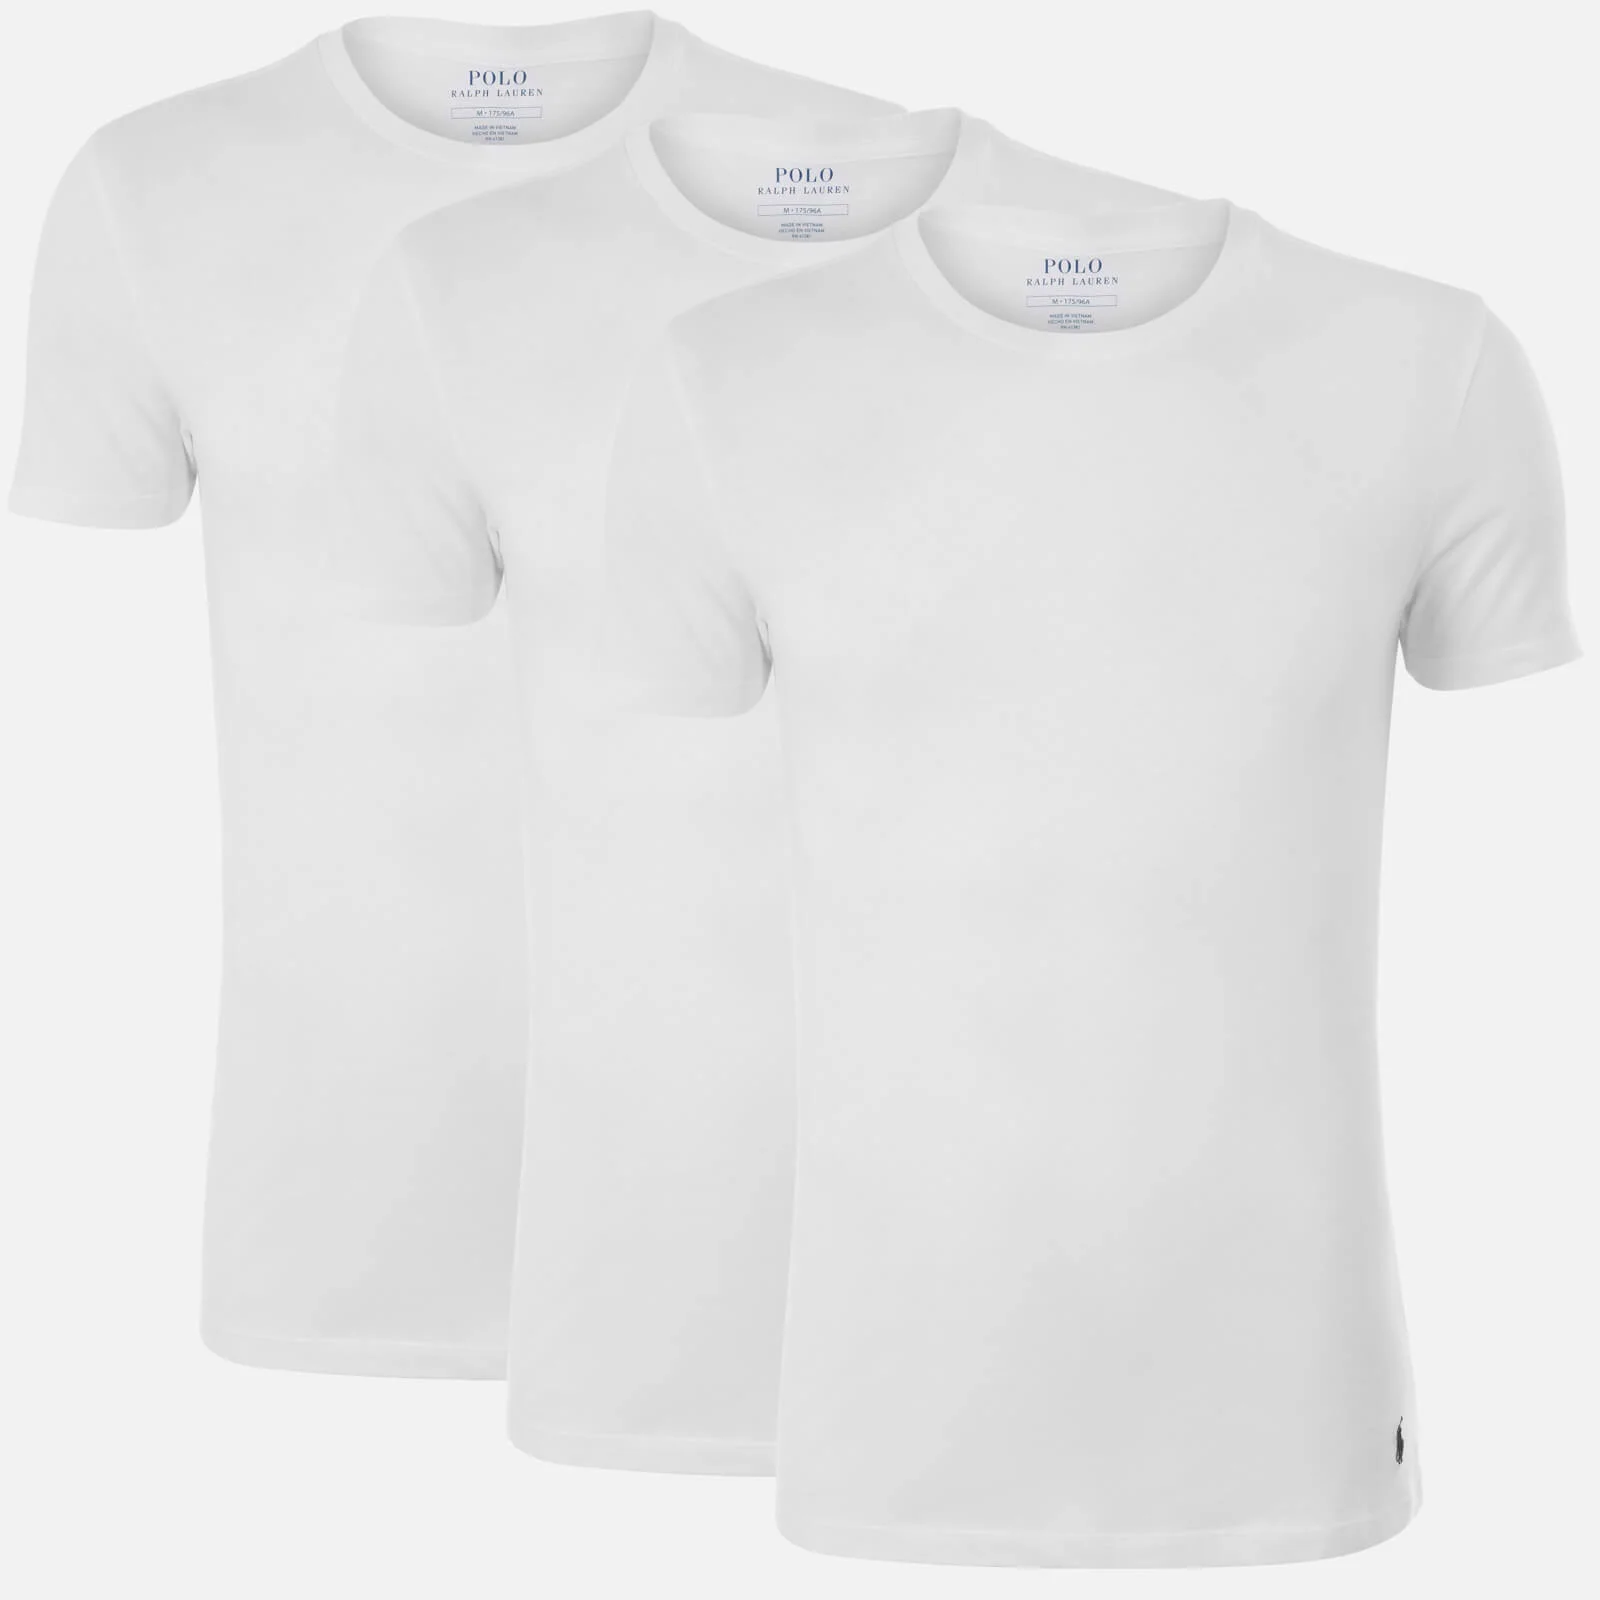 Polo Ralph Lauren Men's 3 Pack Short Sleeve Crew Neck T-Shirt - White Image 1